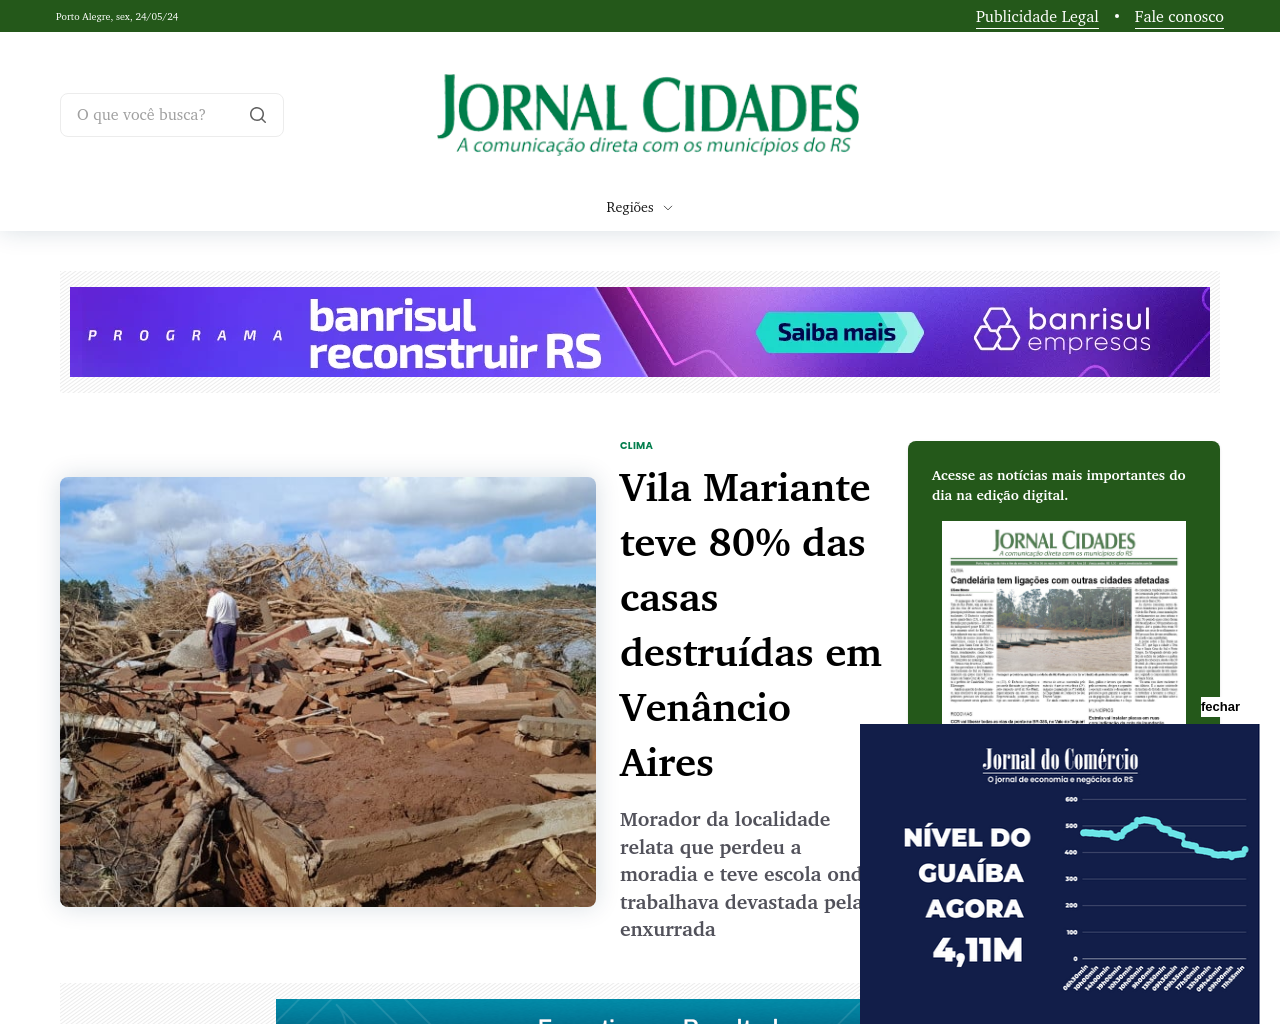 jornalcidades.com.br